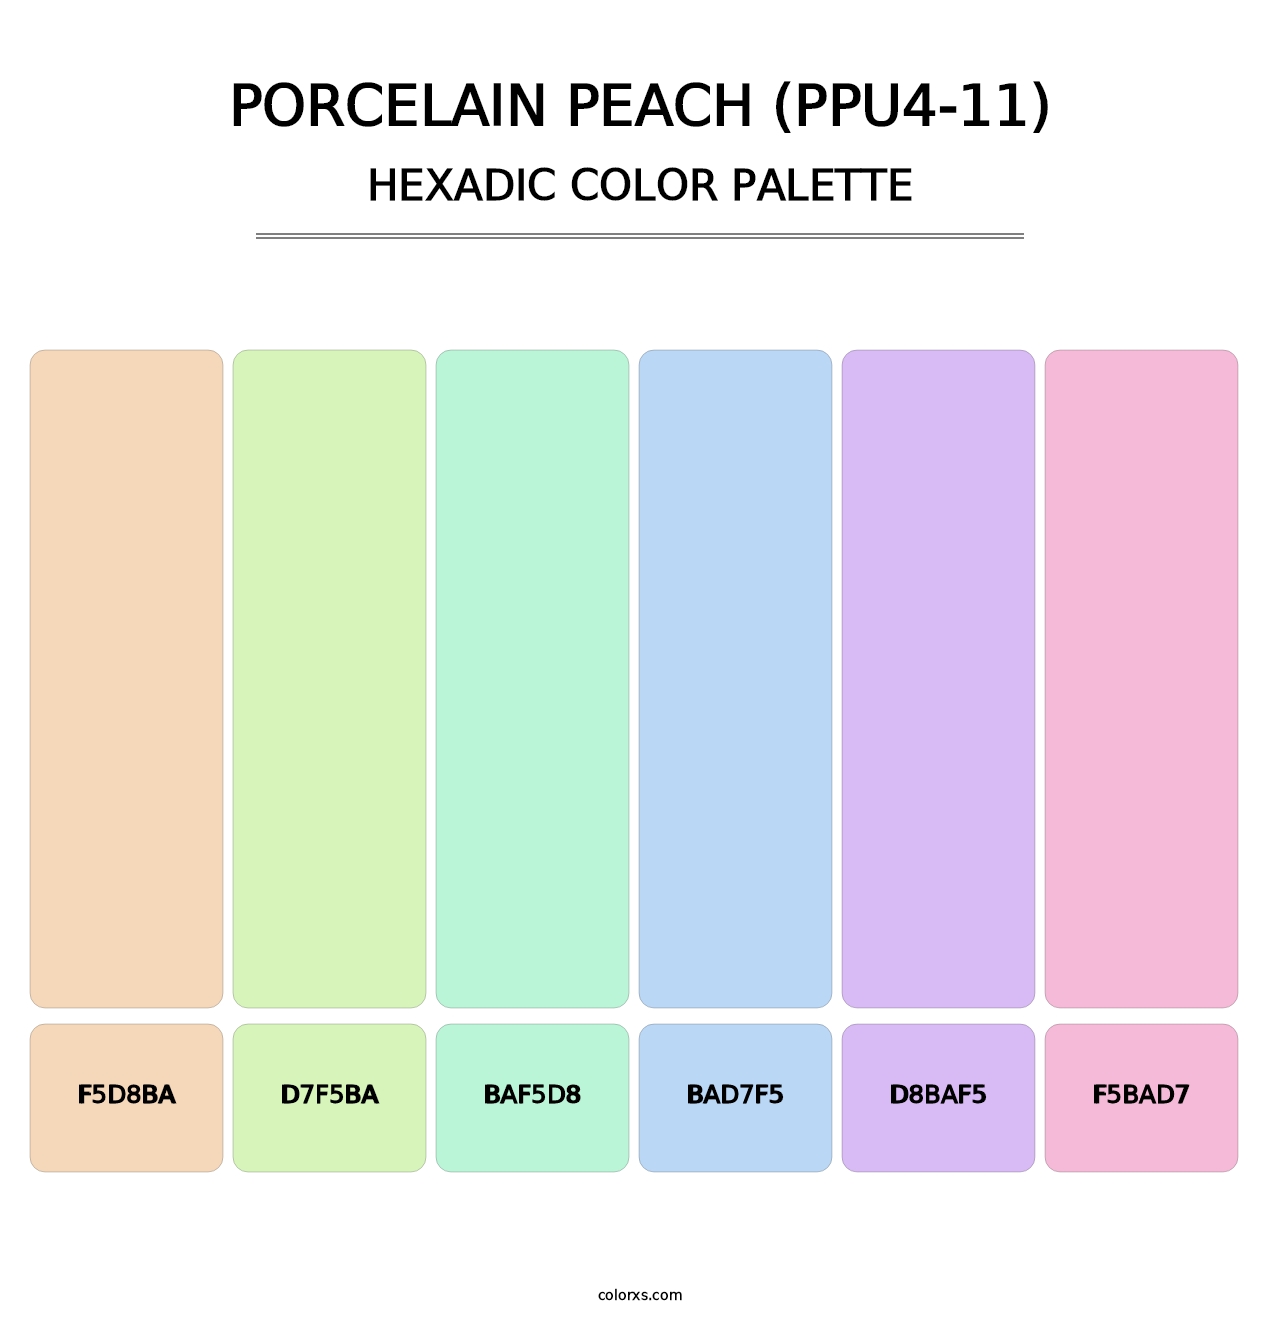 Porcelain Peach (PPU4-11) - Hexadic Color Palette